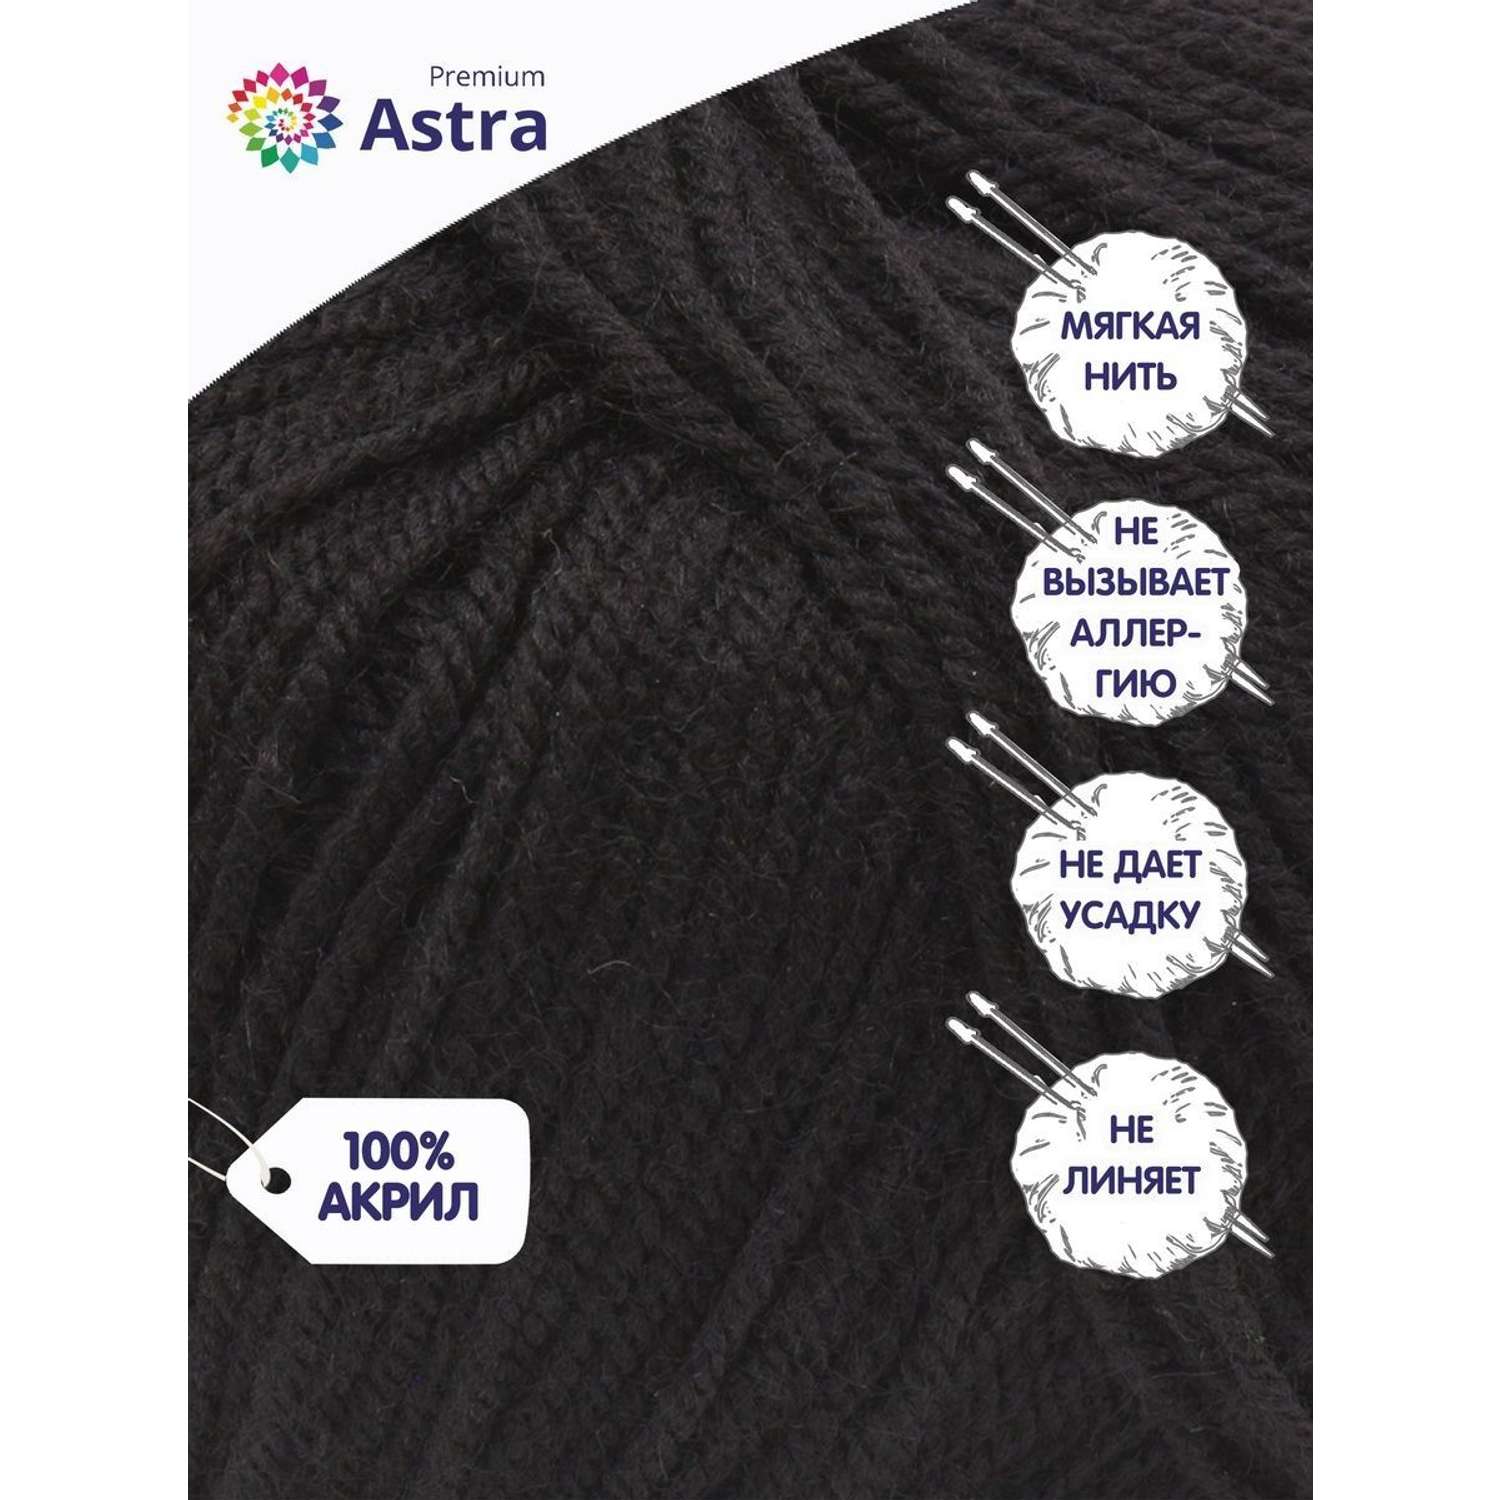 Пряжа для вязания Astra Premium амигуруми акрил для мягких игрушек 50 гр 175 м 003 черный 6 мотков - фото 2